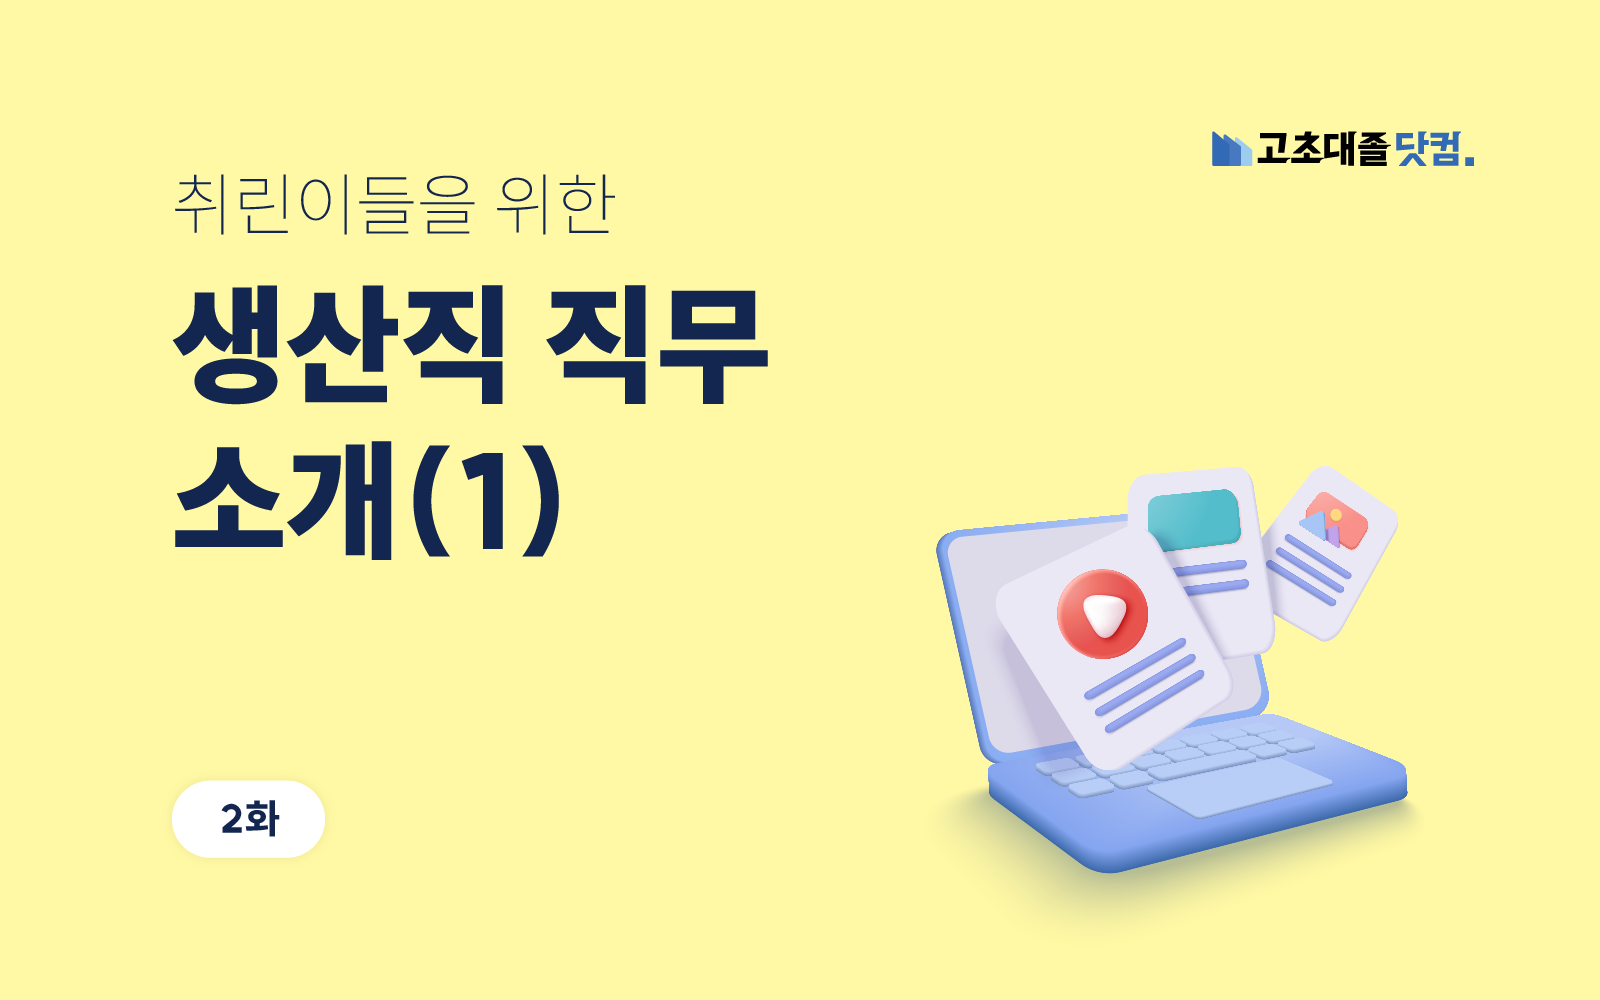 고초대졸닷컴 취린백과 생산직 직무 소개(1)